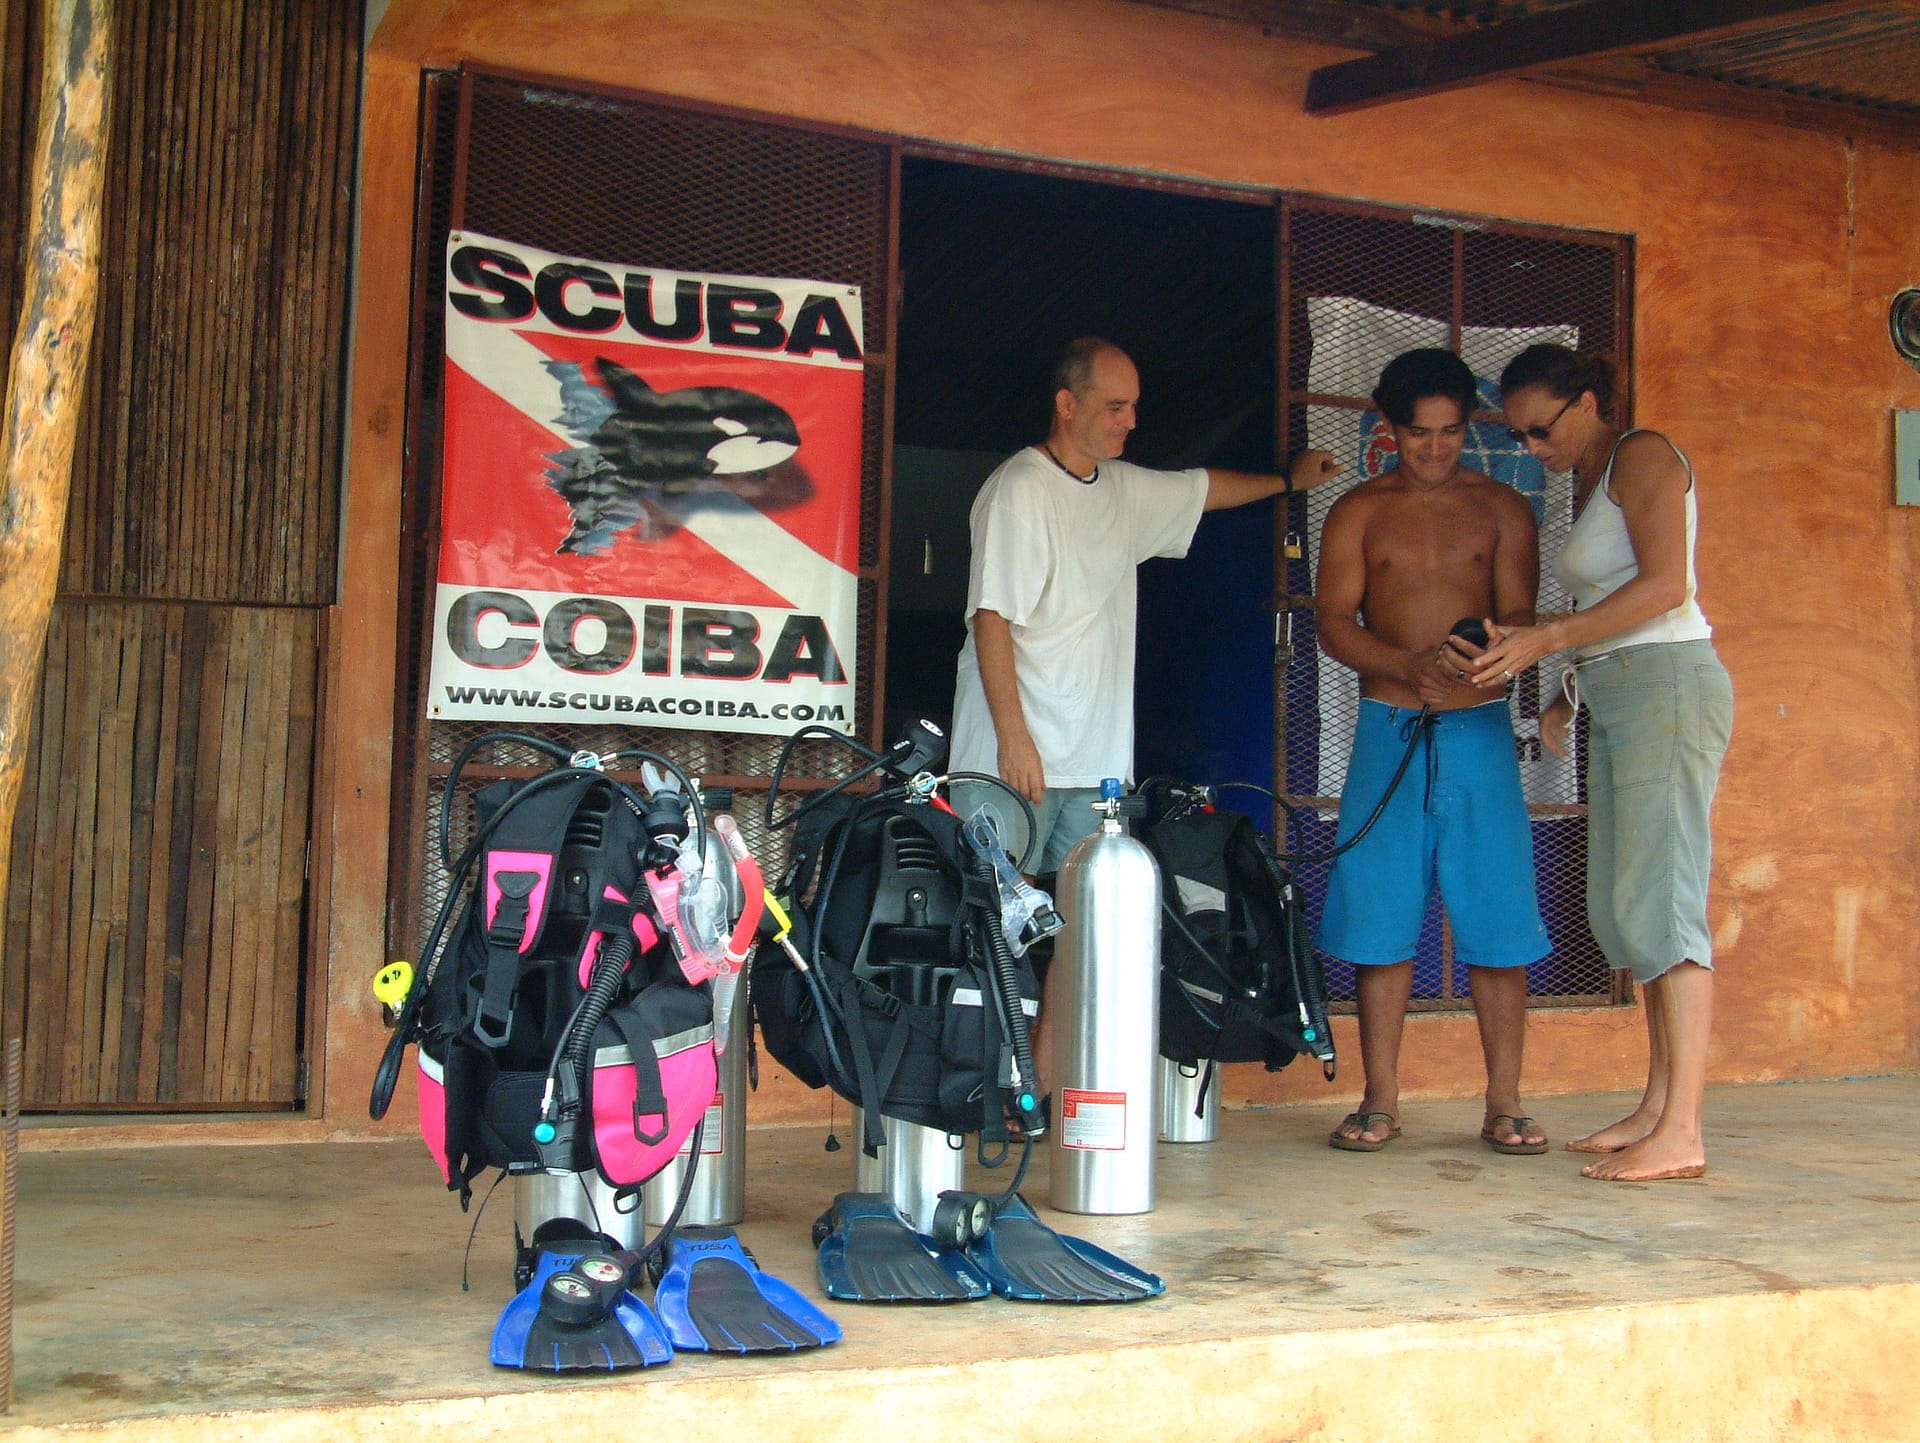 First Scuba Coiba Dive Center November 2003 - THE ORIGINAL